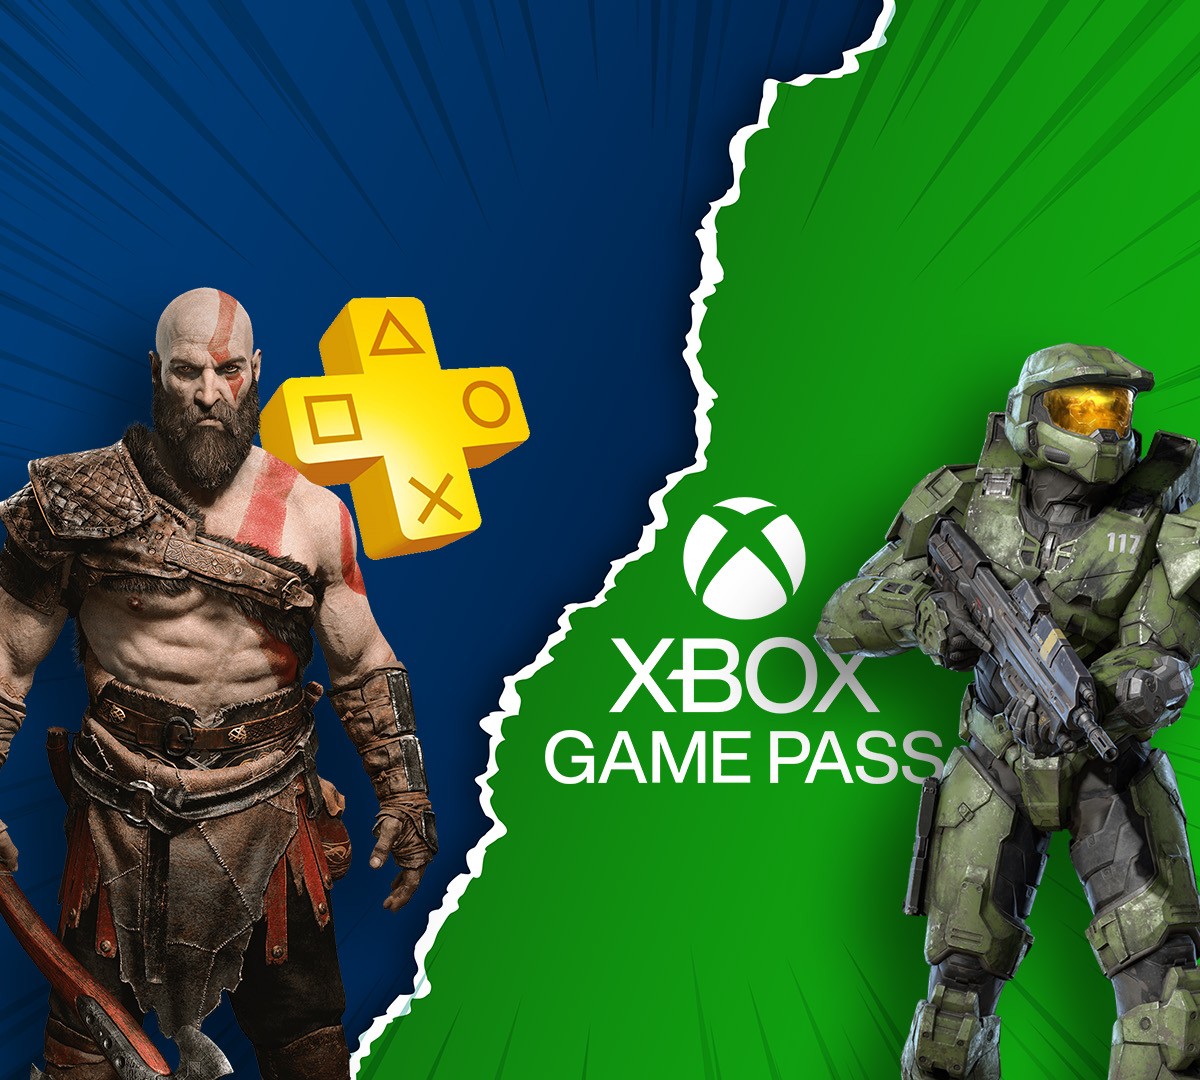 PlayStation Plus vs Xbox Game Pass: vídeo compara os serviços da